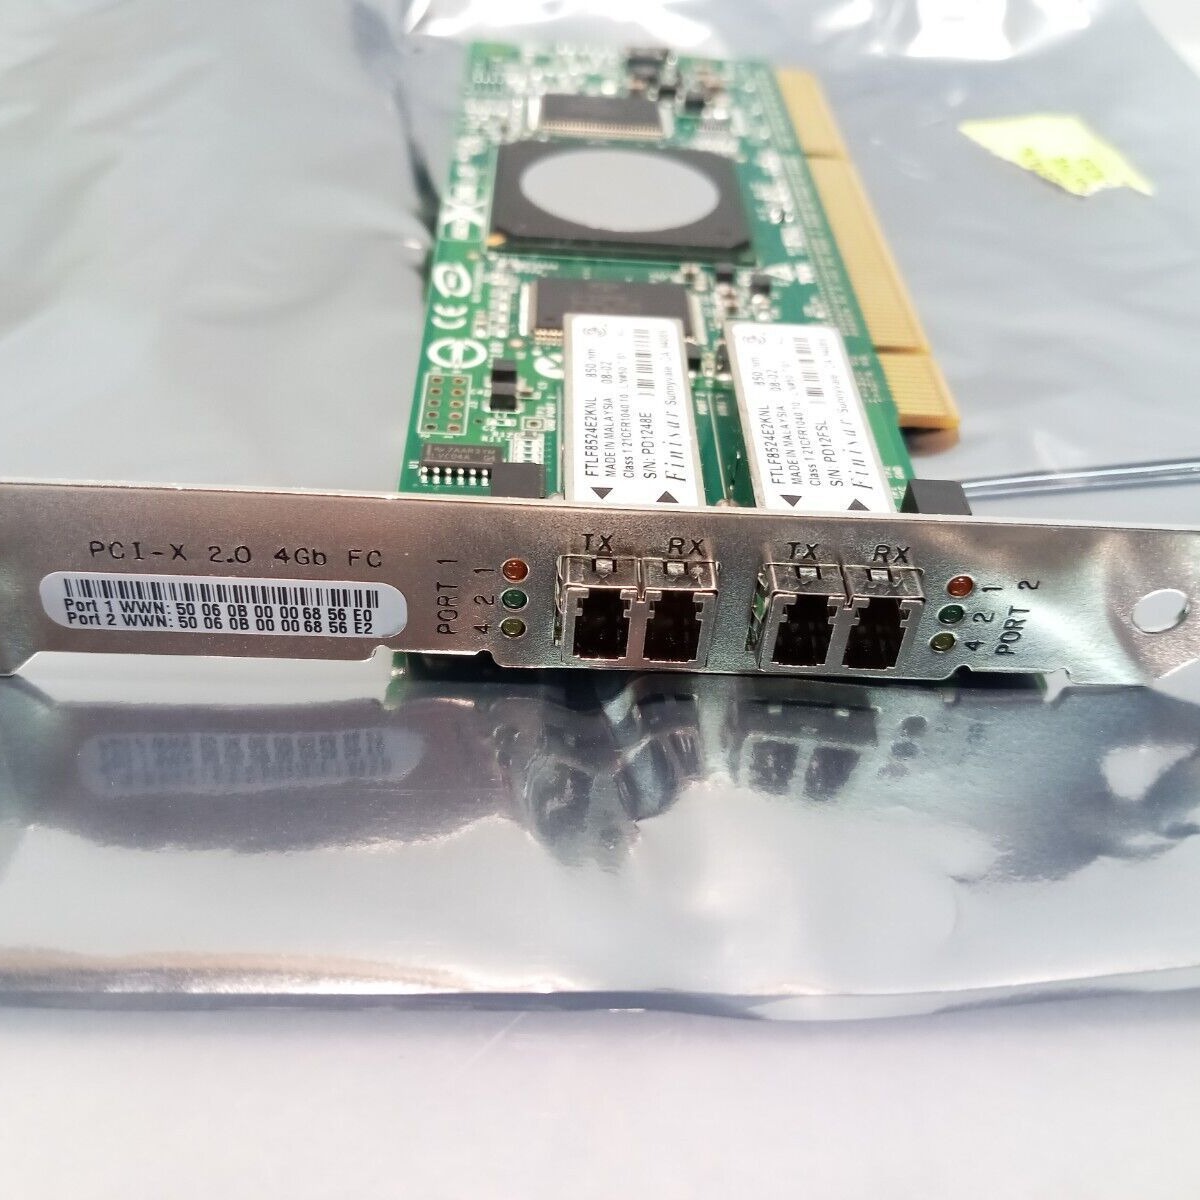 HP RX6600 AB379-60101 双口 4GB PCI-X 光纤 HBA 通道卡